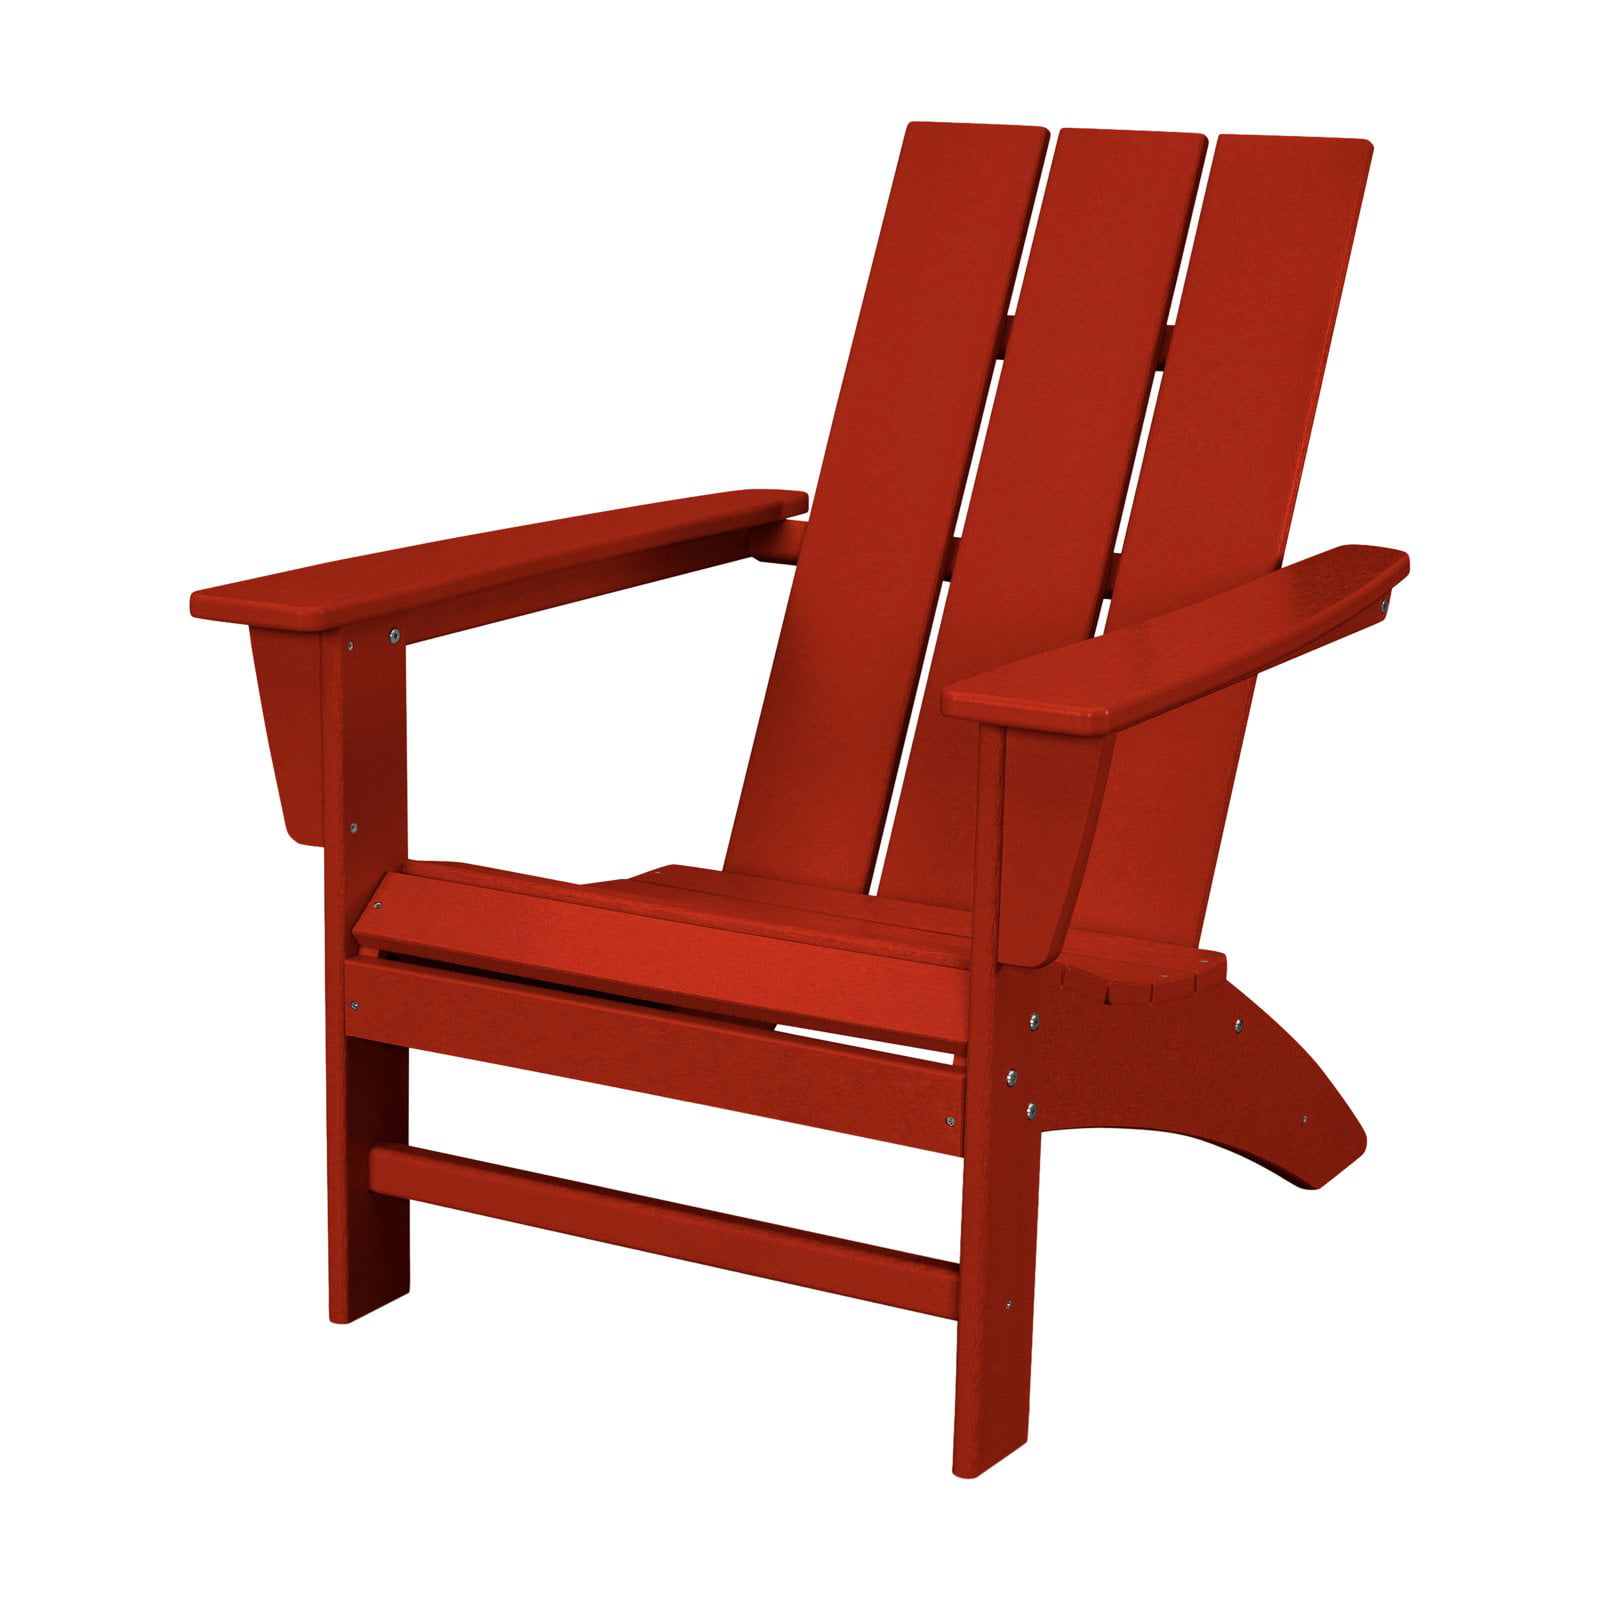 10 Best Adirondack Chairs